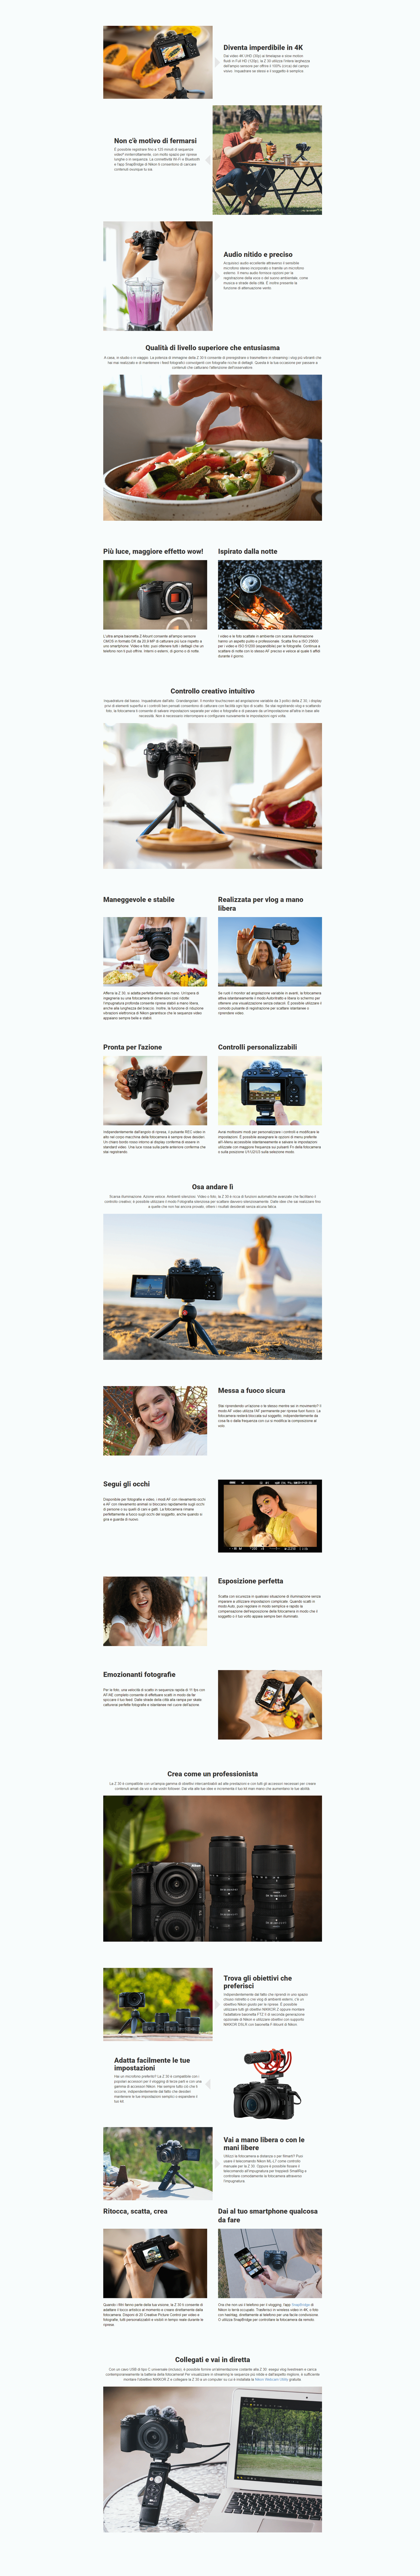 Template Nikon Z30 + 16-50mm f/3.5-6.3 VR Vlogger Kit